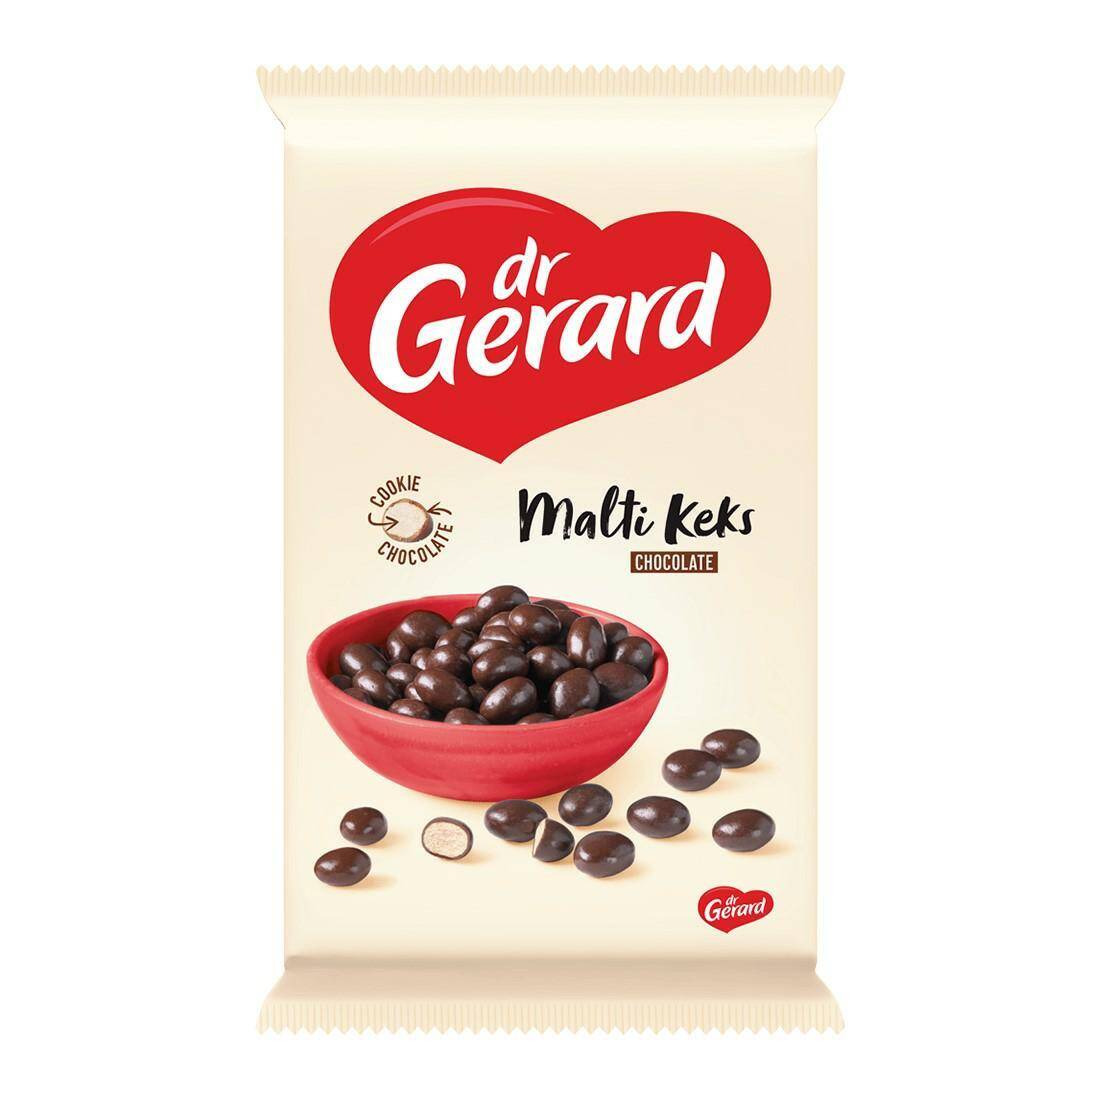 DR GERARD ciasteczka MALTIKEKS CHOCOLLATE 320g [8]